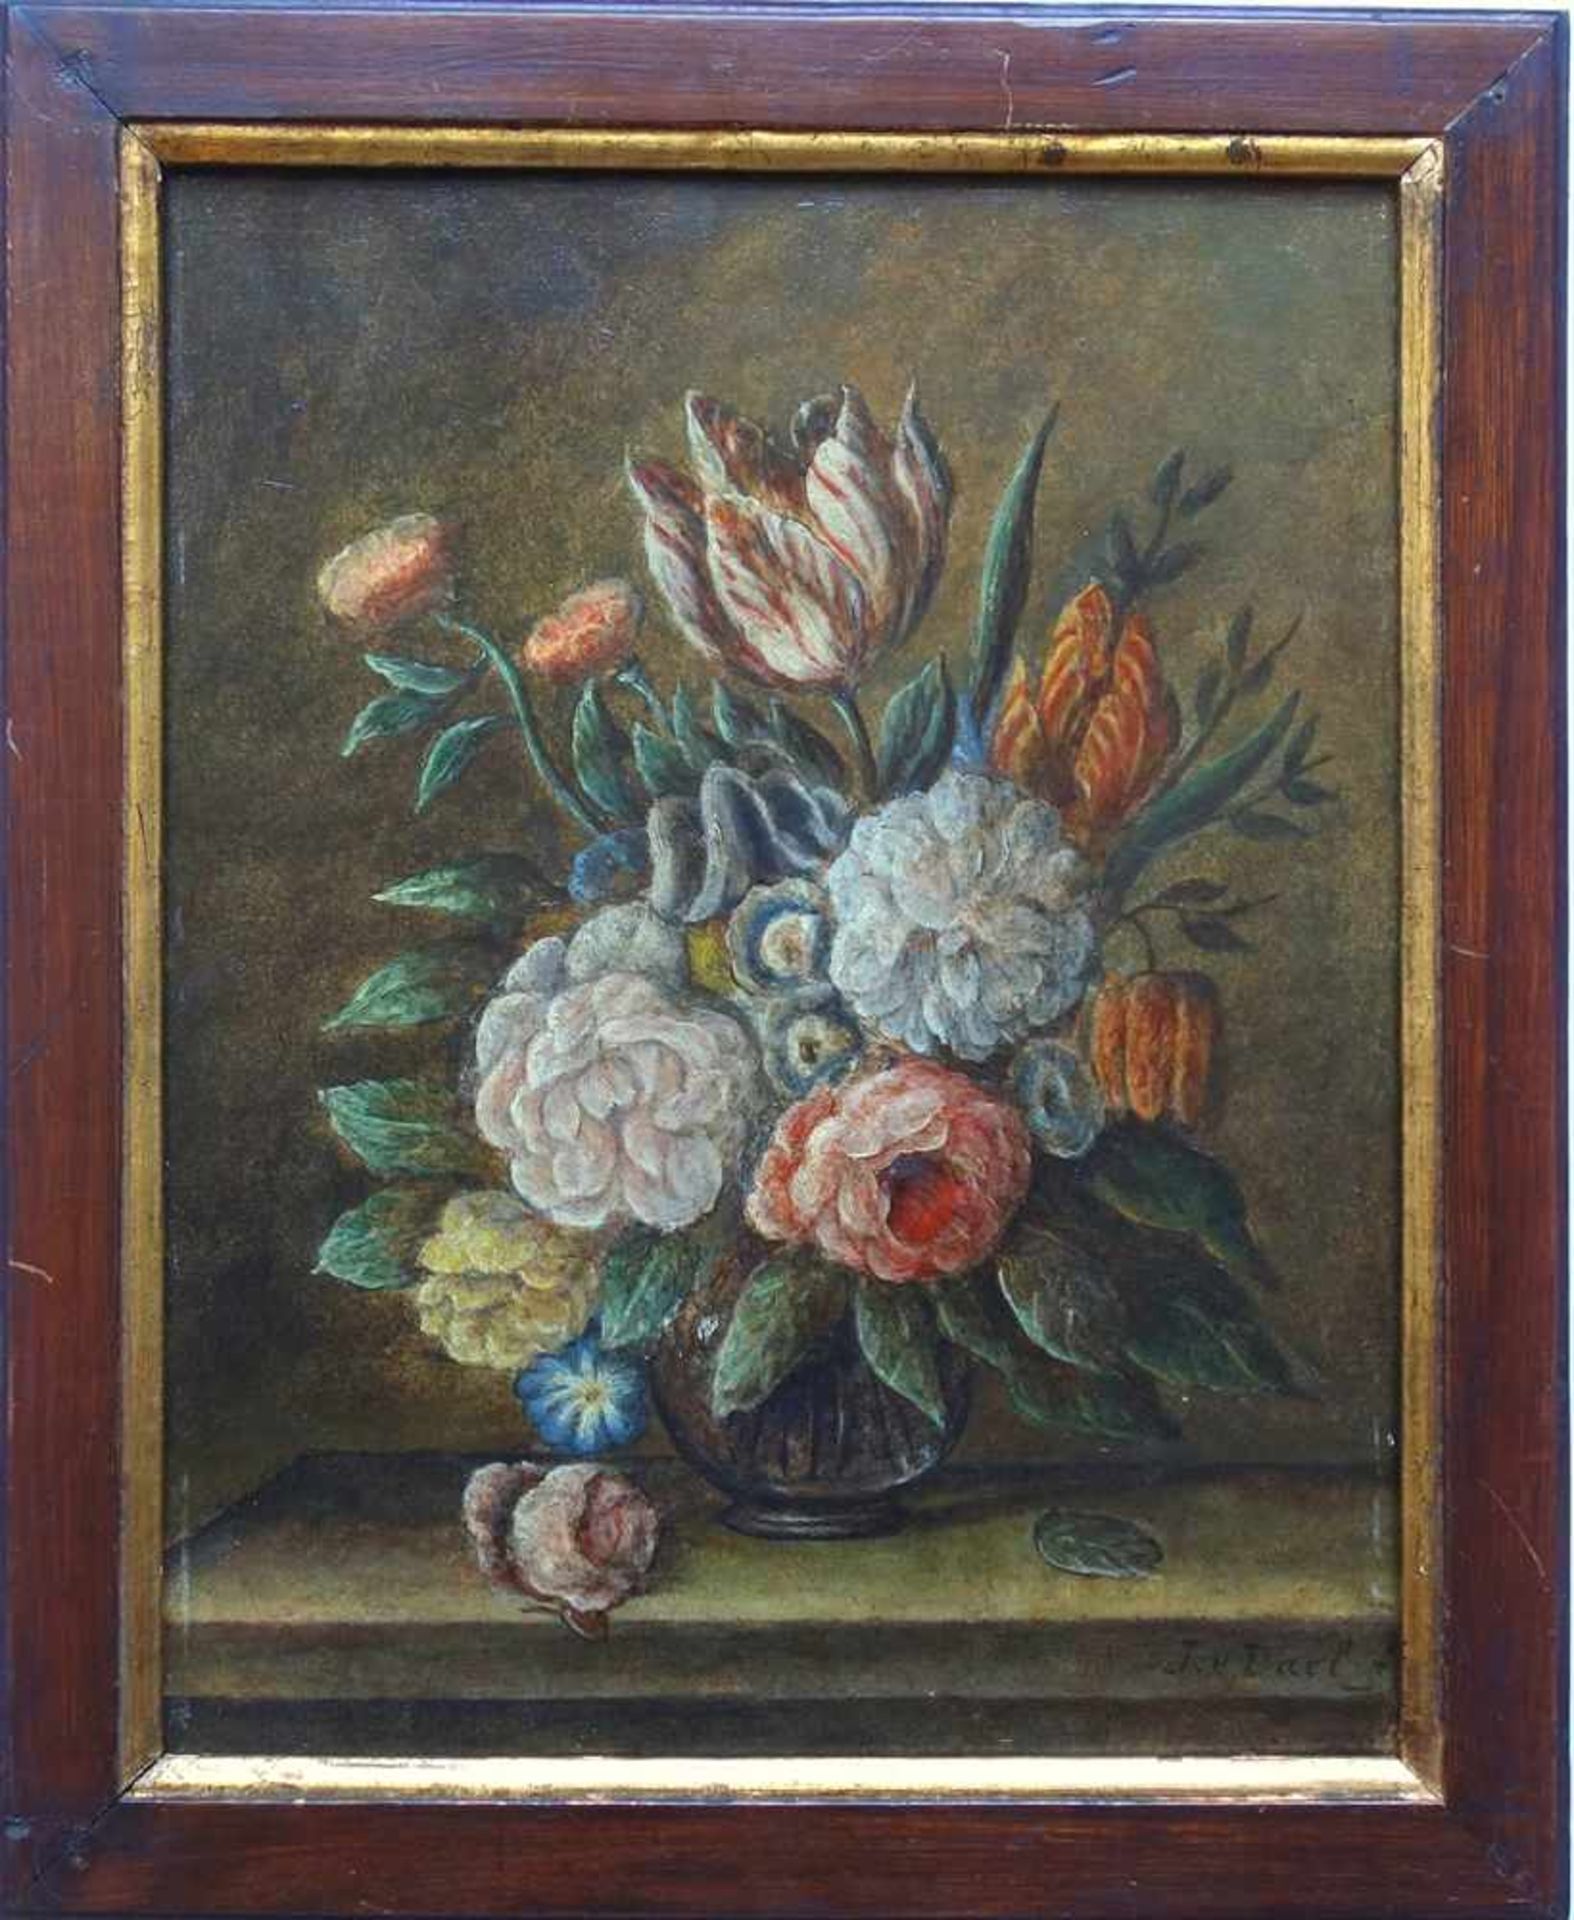 Kopie nach Jan van Dael, "Blumenstillleben mit Tulpen", 20. Jahrhundert, Öl/Holz, HB 35*27,5cm, in